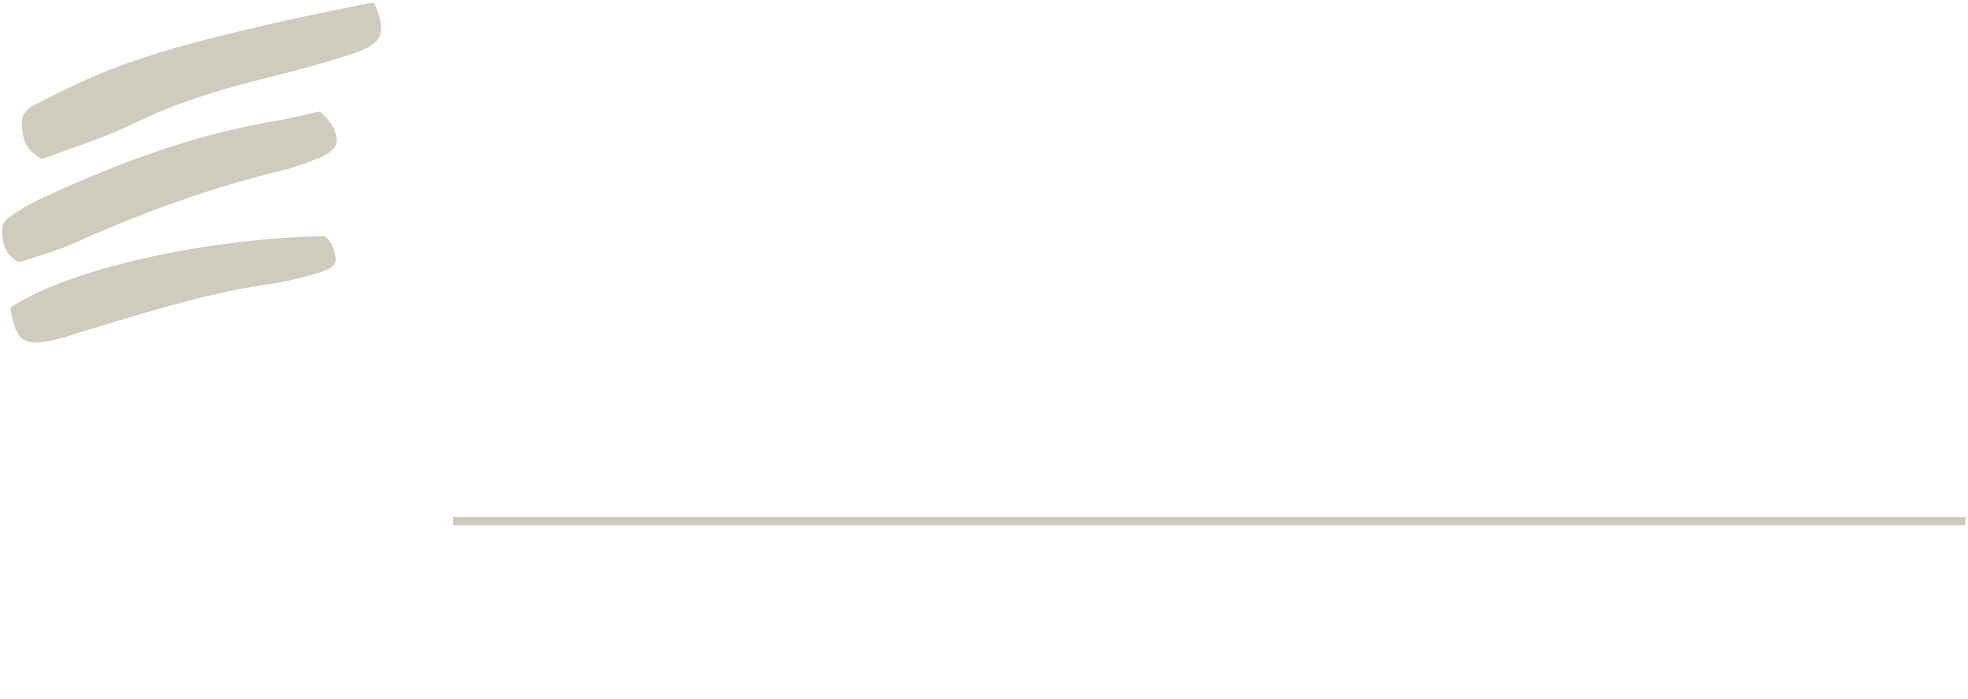 Echelon at 712 Seward | Seward Collective